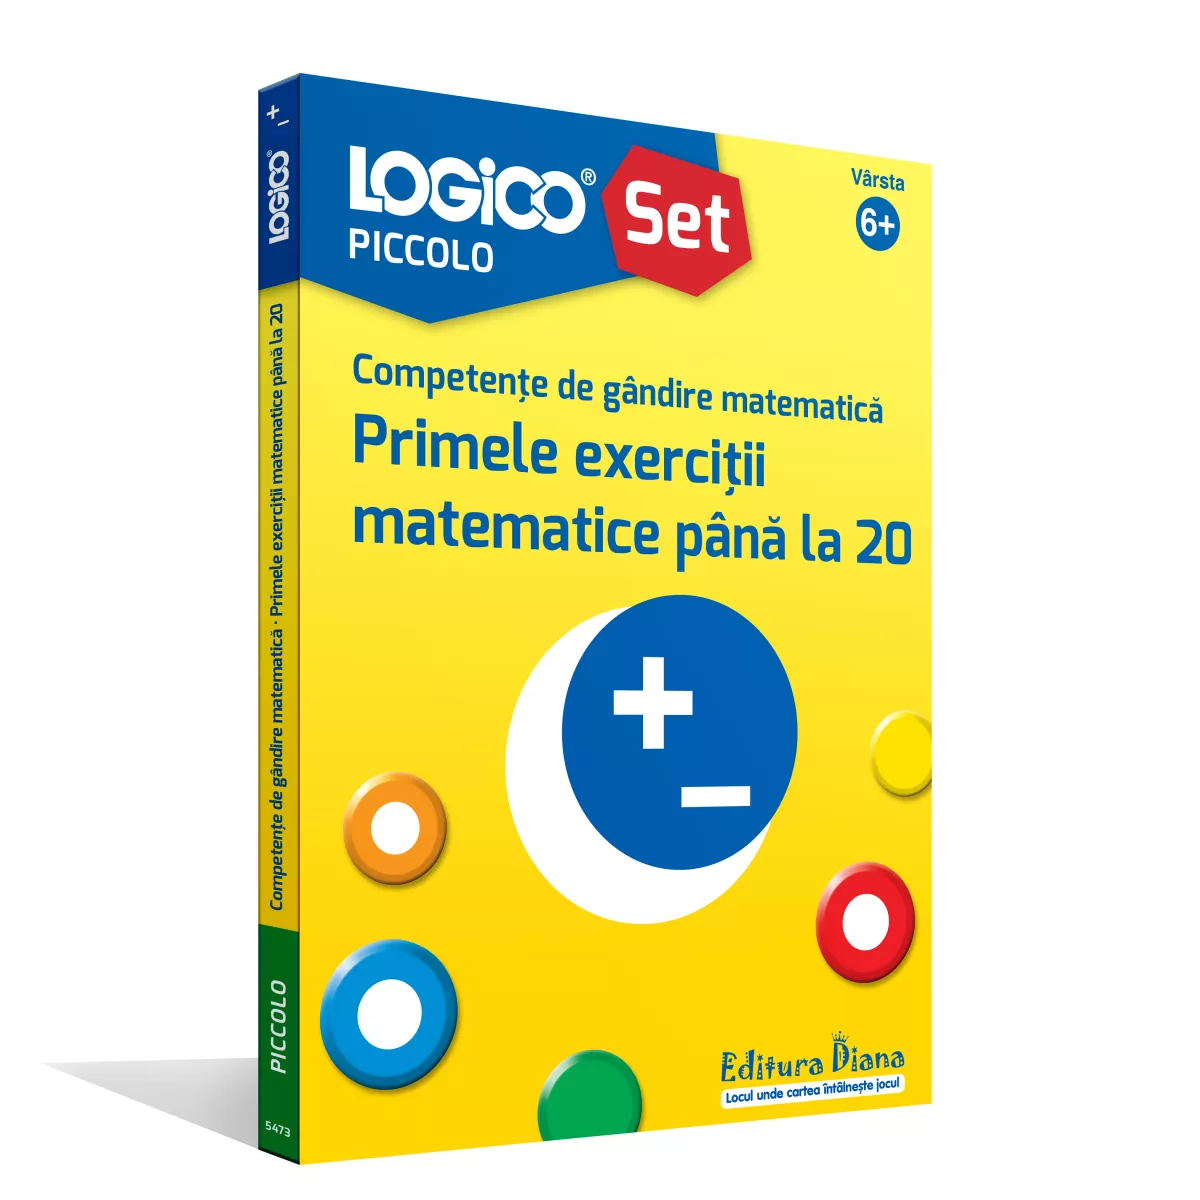 LOGICO PICCOLO - SET CU RAMĂ - Competențe de gândire matematică. Primele exerciții matematice până la 20 (6+)